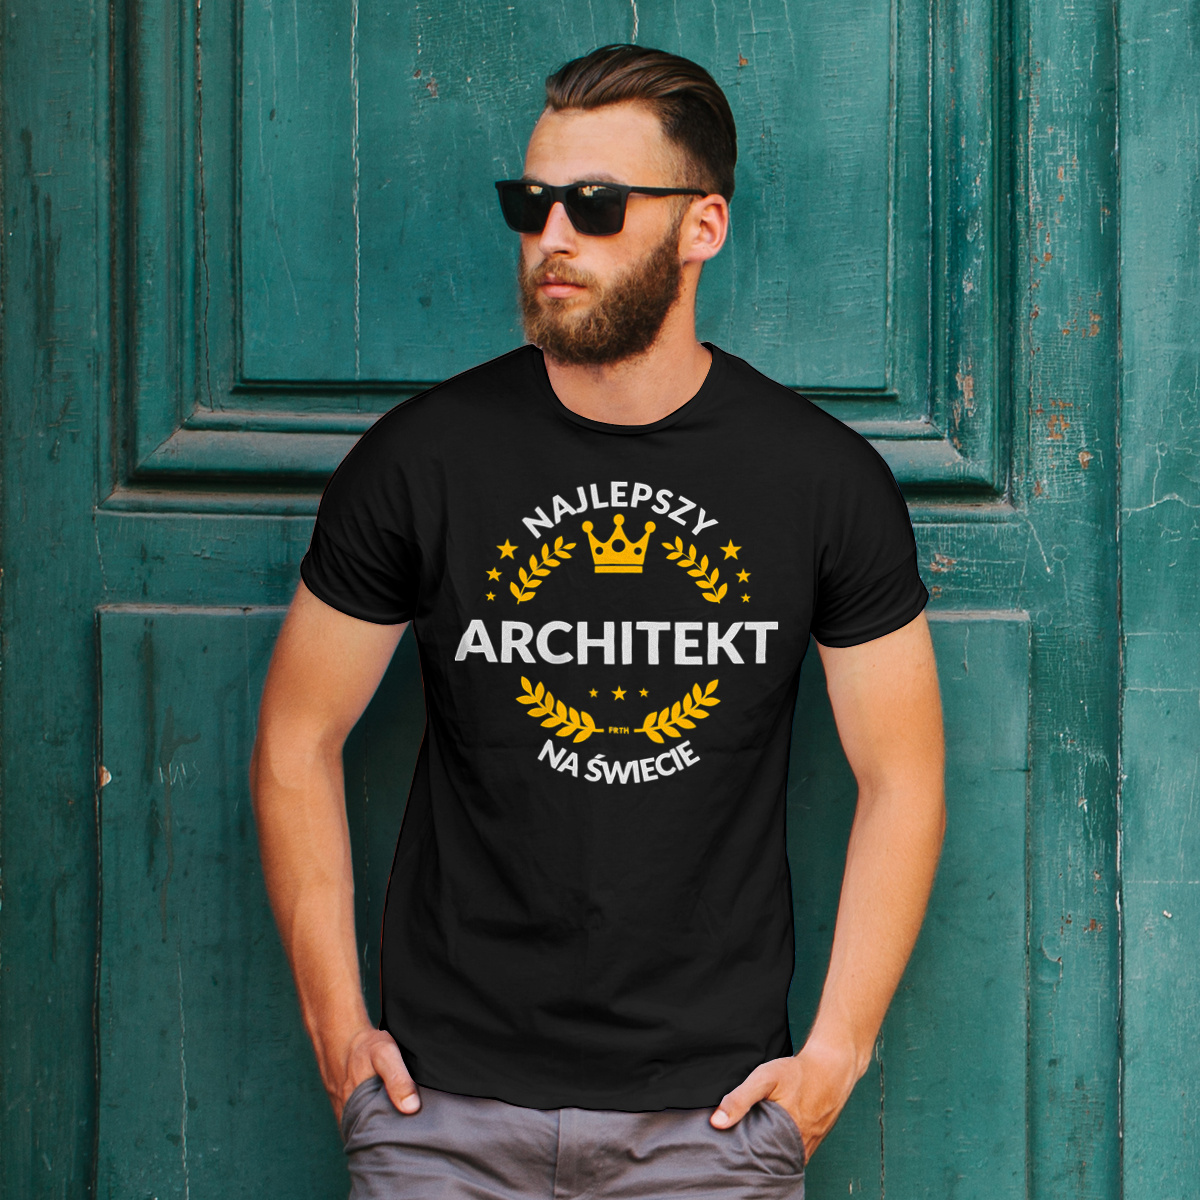 Najlepszy Architekt Na Świecie - Męska Koszulka Czarna